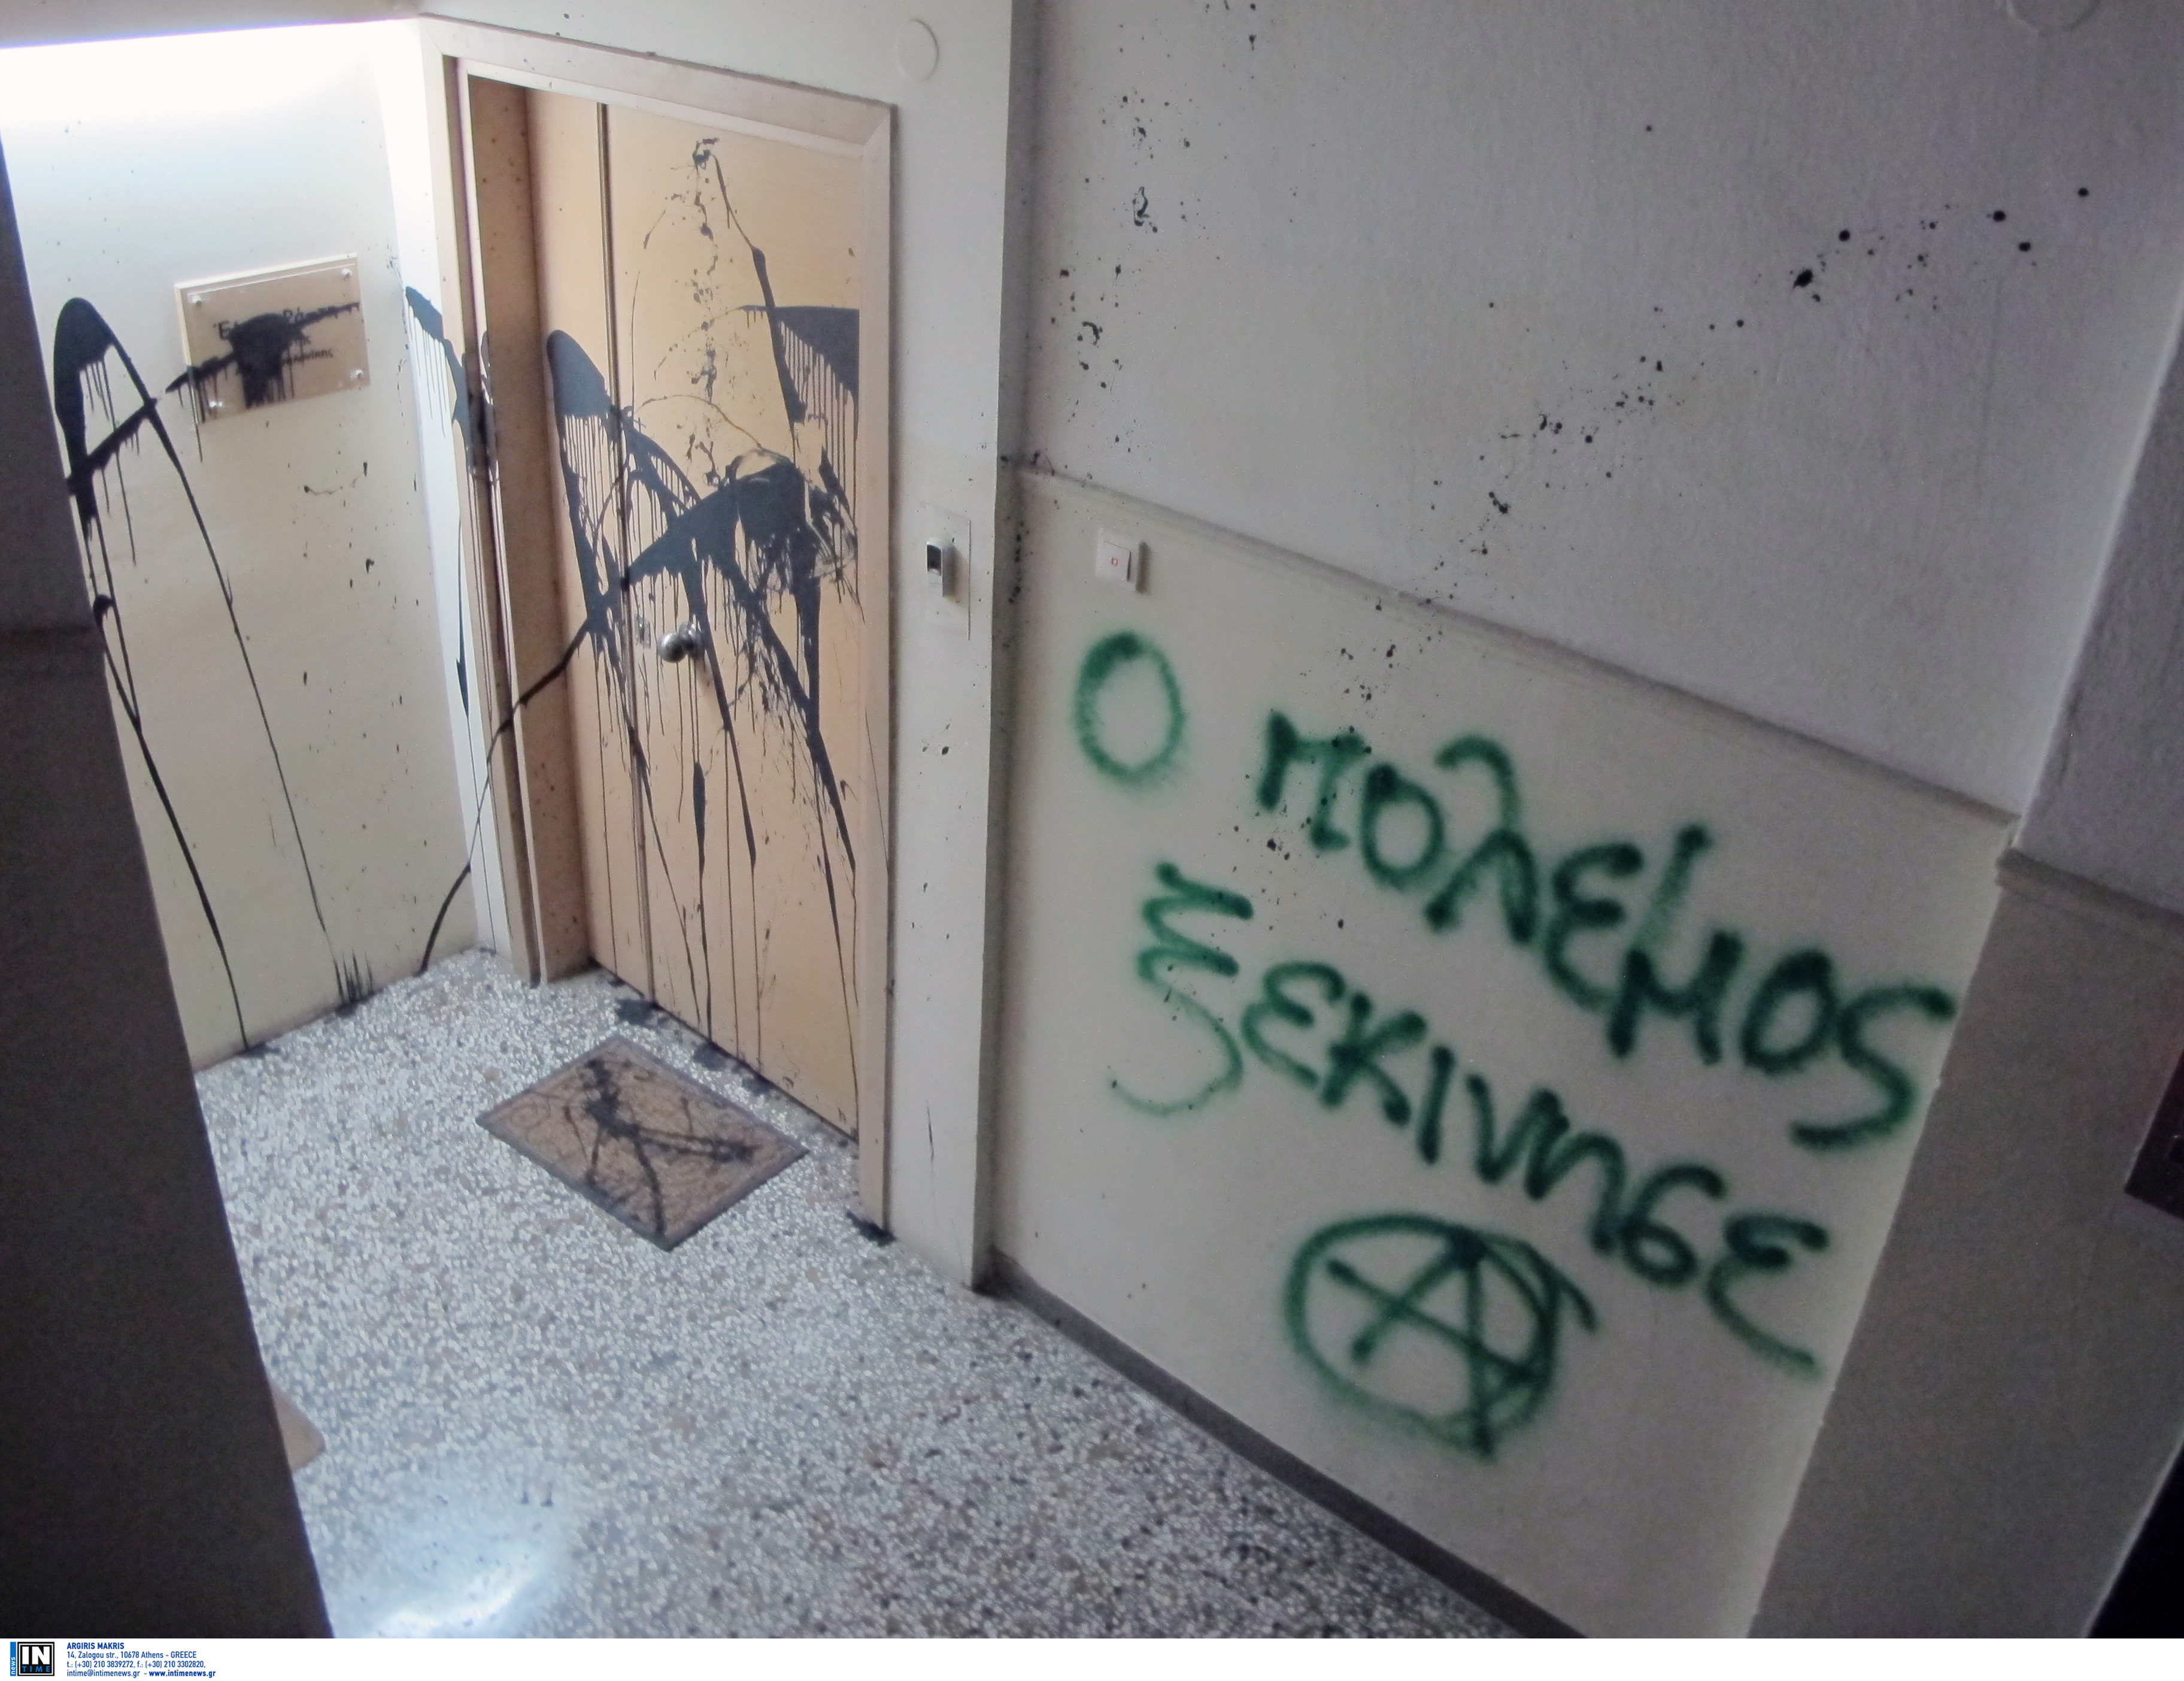 Θεσσαλονίκη: Επίθεση στο πολιτικό γραφείο της Έλενας Ράπτη! Η ανακοίνωση της ΝΔ